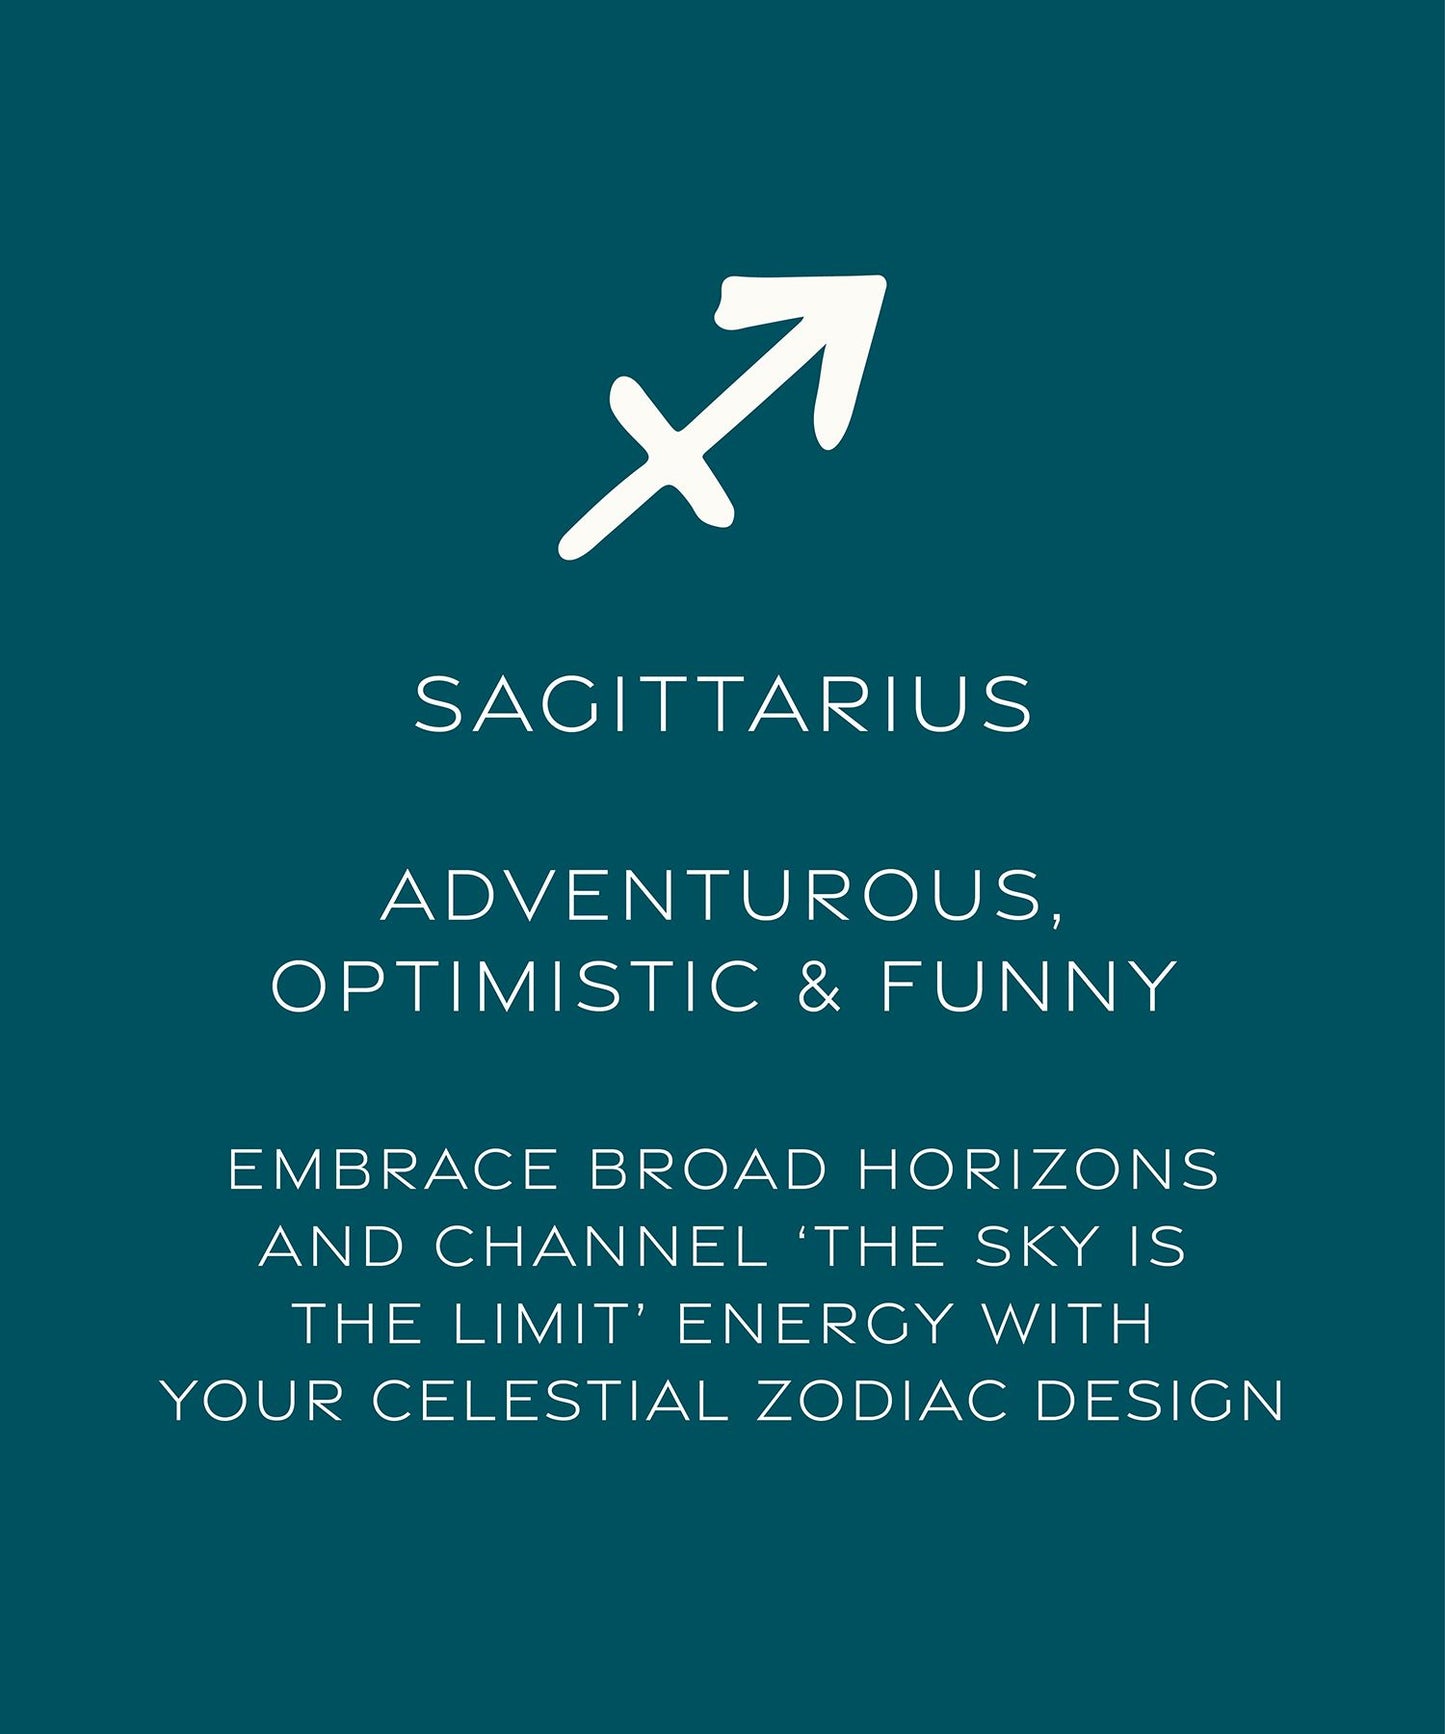 Sagittarius card